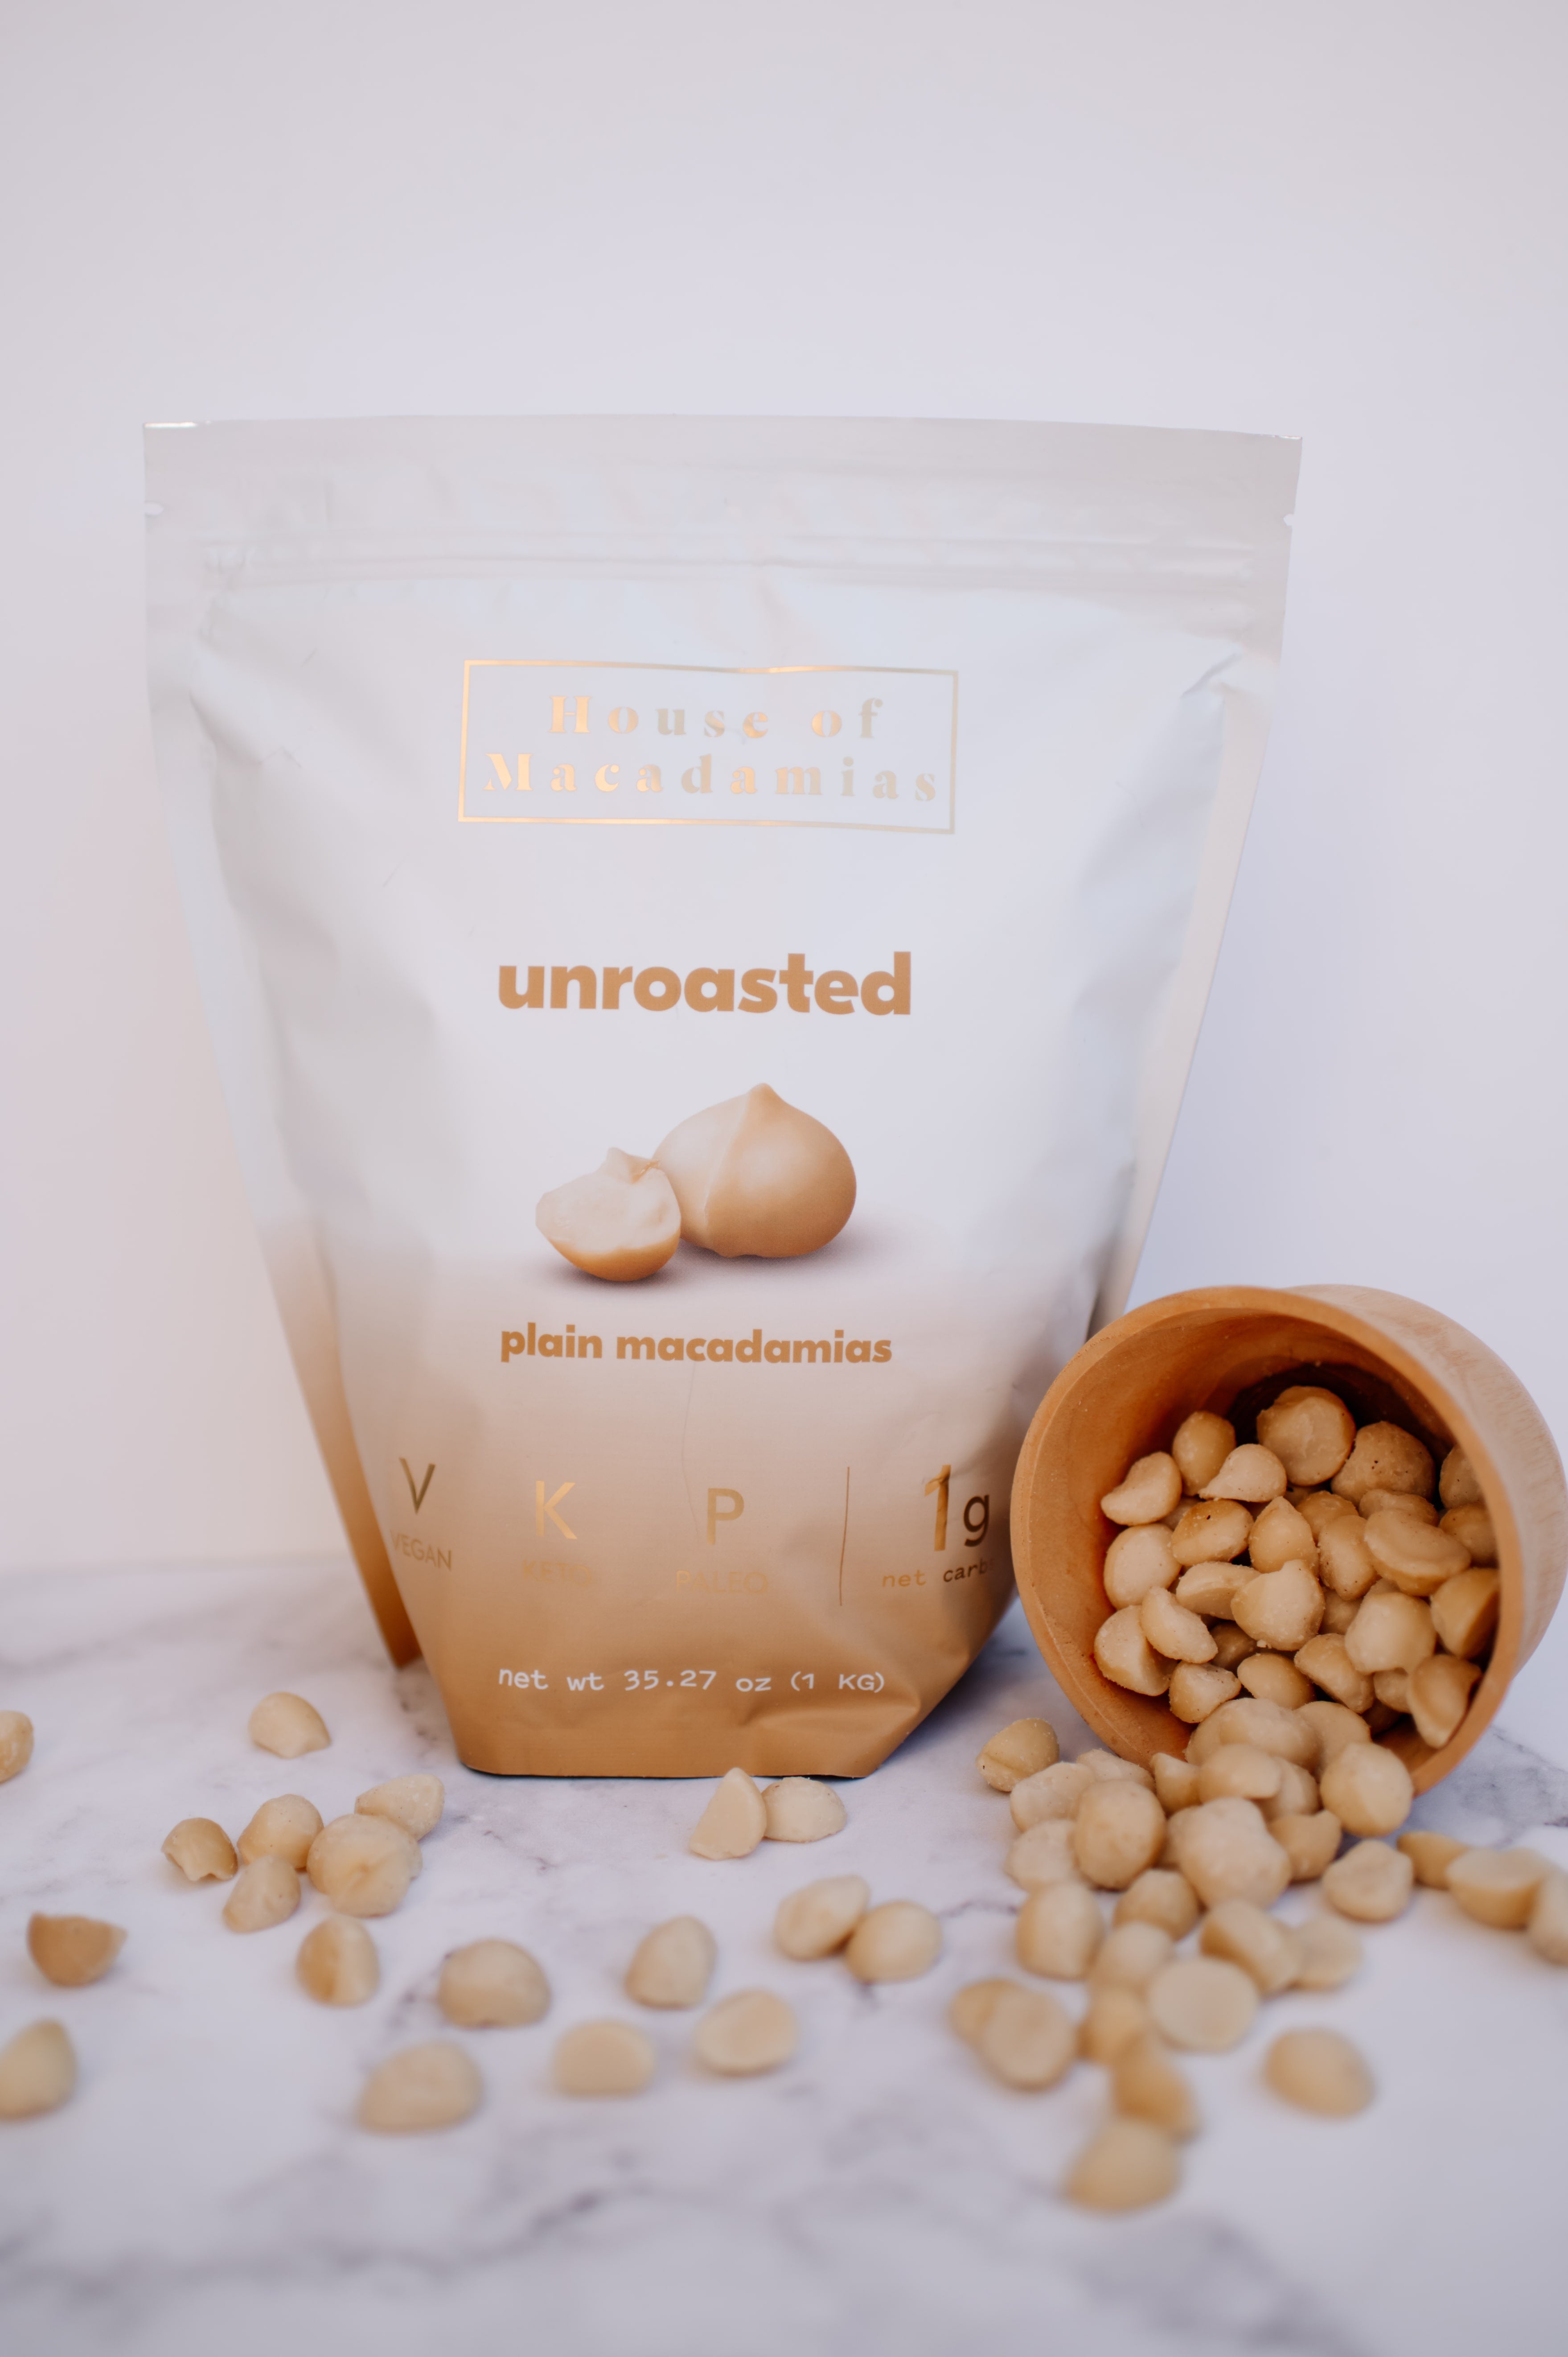 Unroasted Macadamia Nuts (1 kg/2.2 lbs) - House of Macadamias - simple snacks